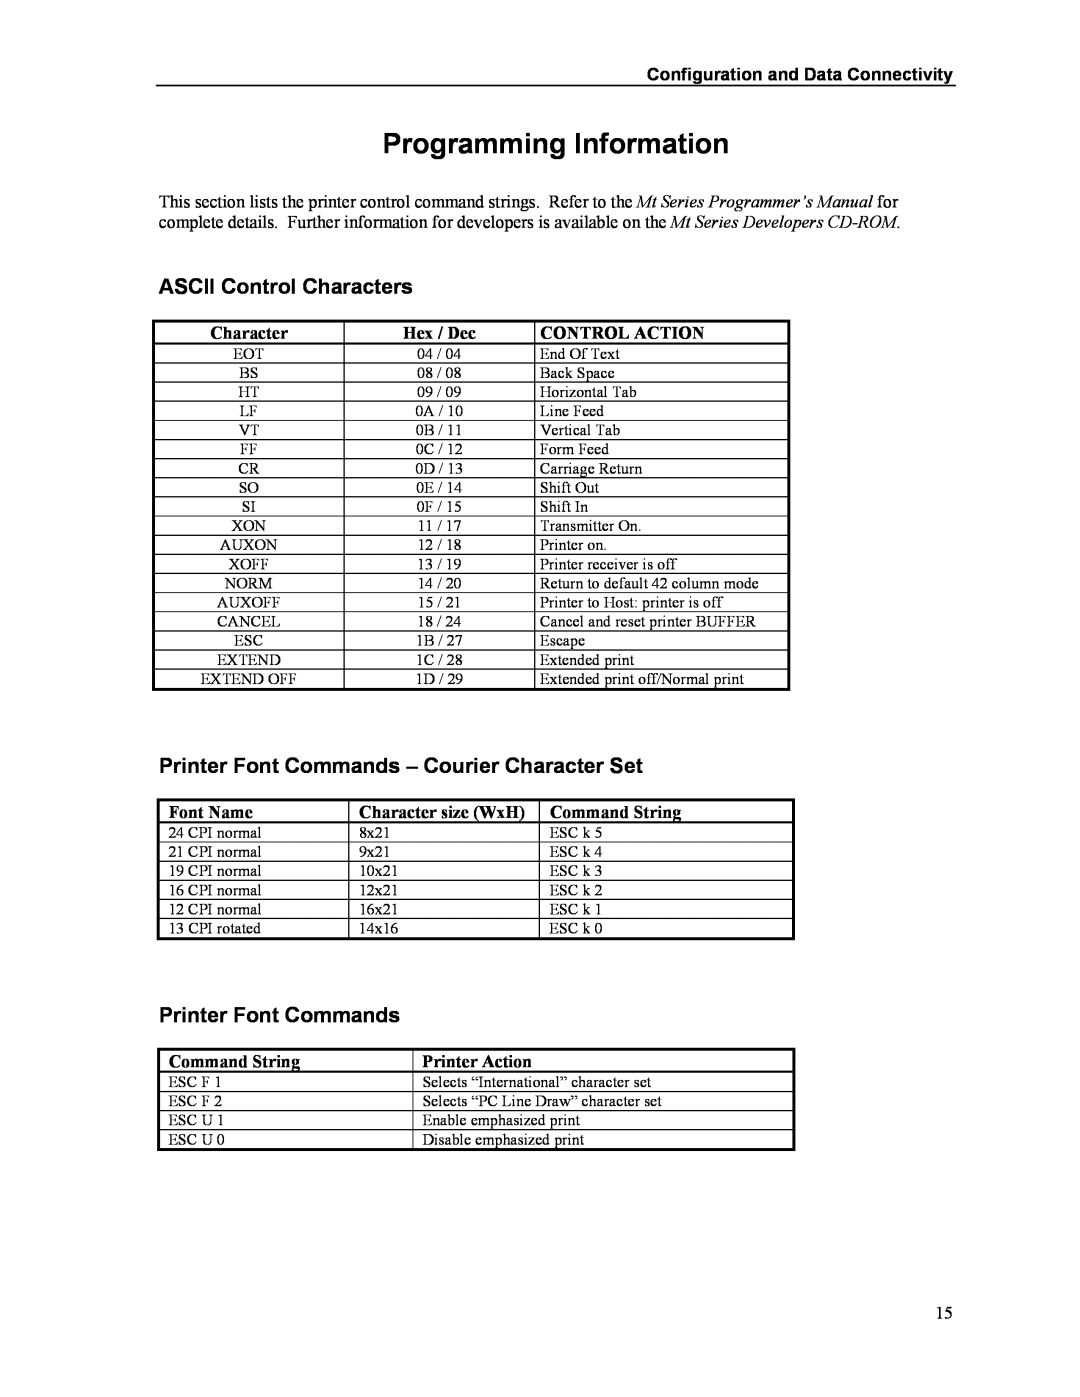 Printek Mt3-II Programming Information, ASCII Control Characters, Printer Font Commands - Courier Character Set, Hex / Dec 